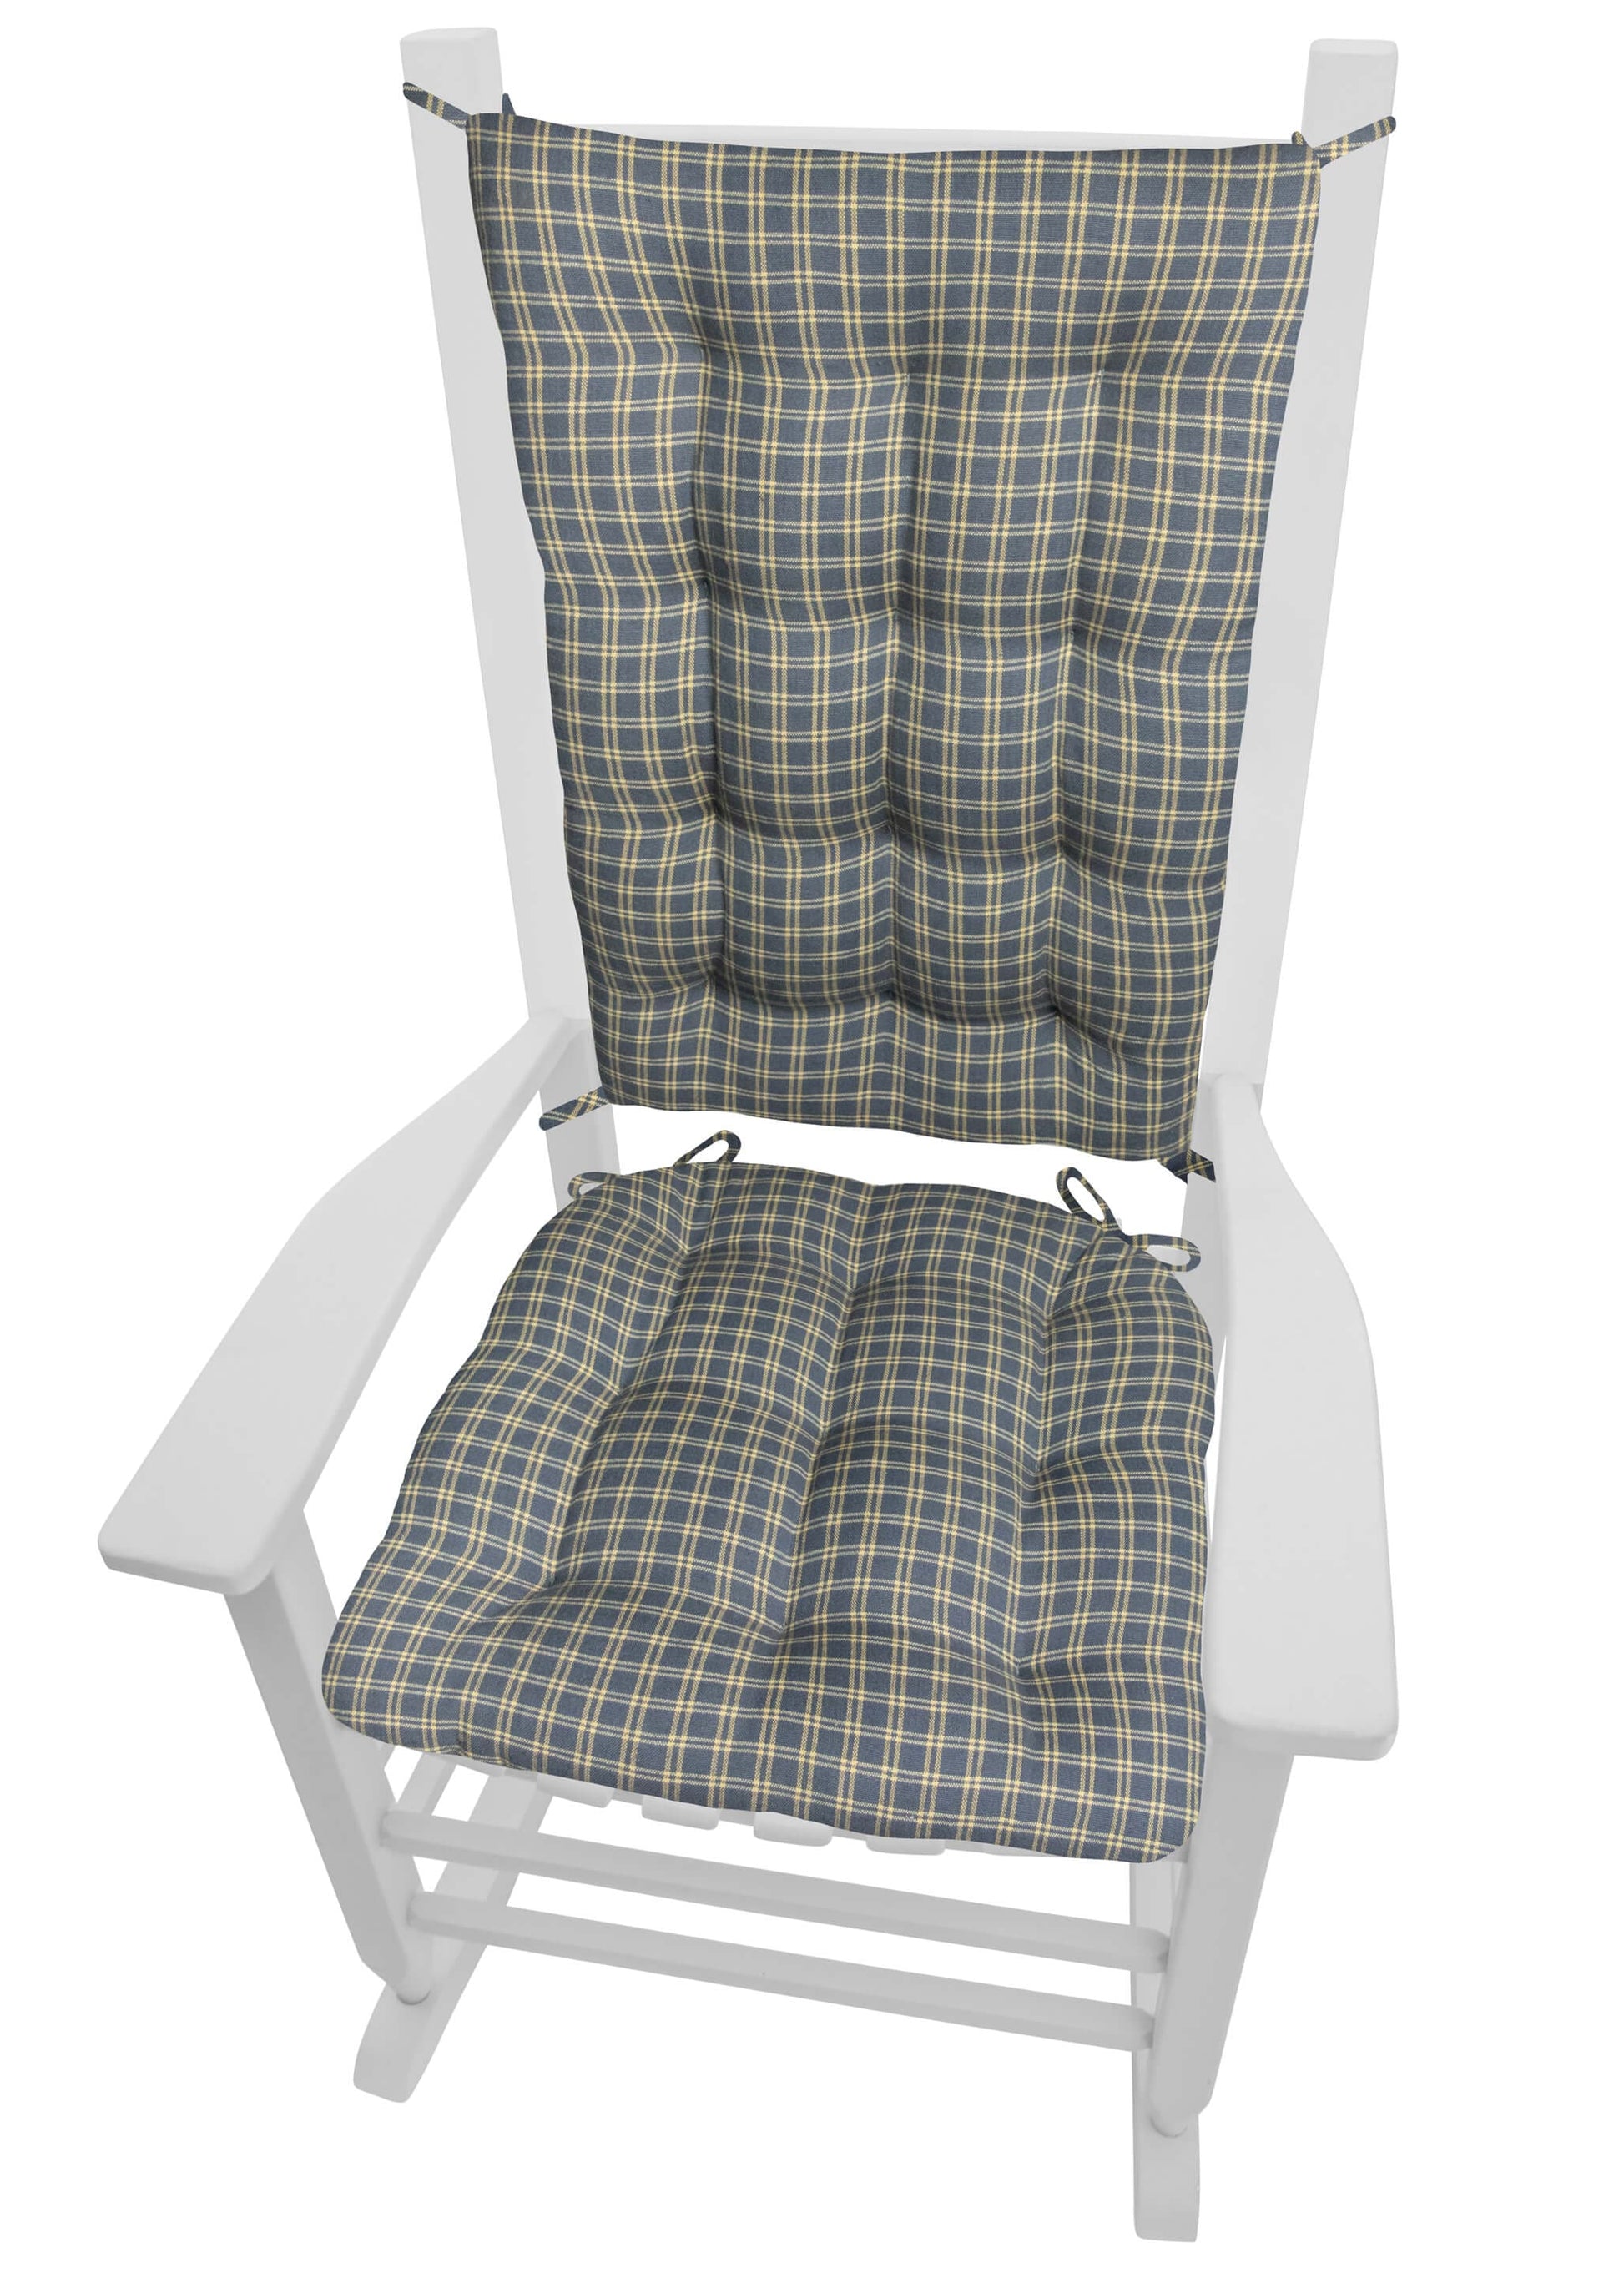 Britt Blue Plaid Rocking Chair Cushions - Barnett Home Decor - Blue & Tan